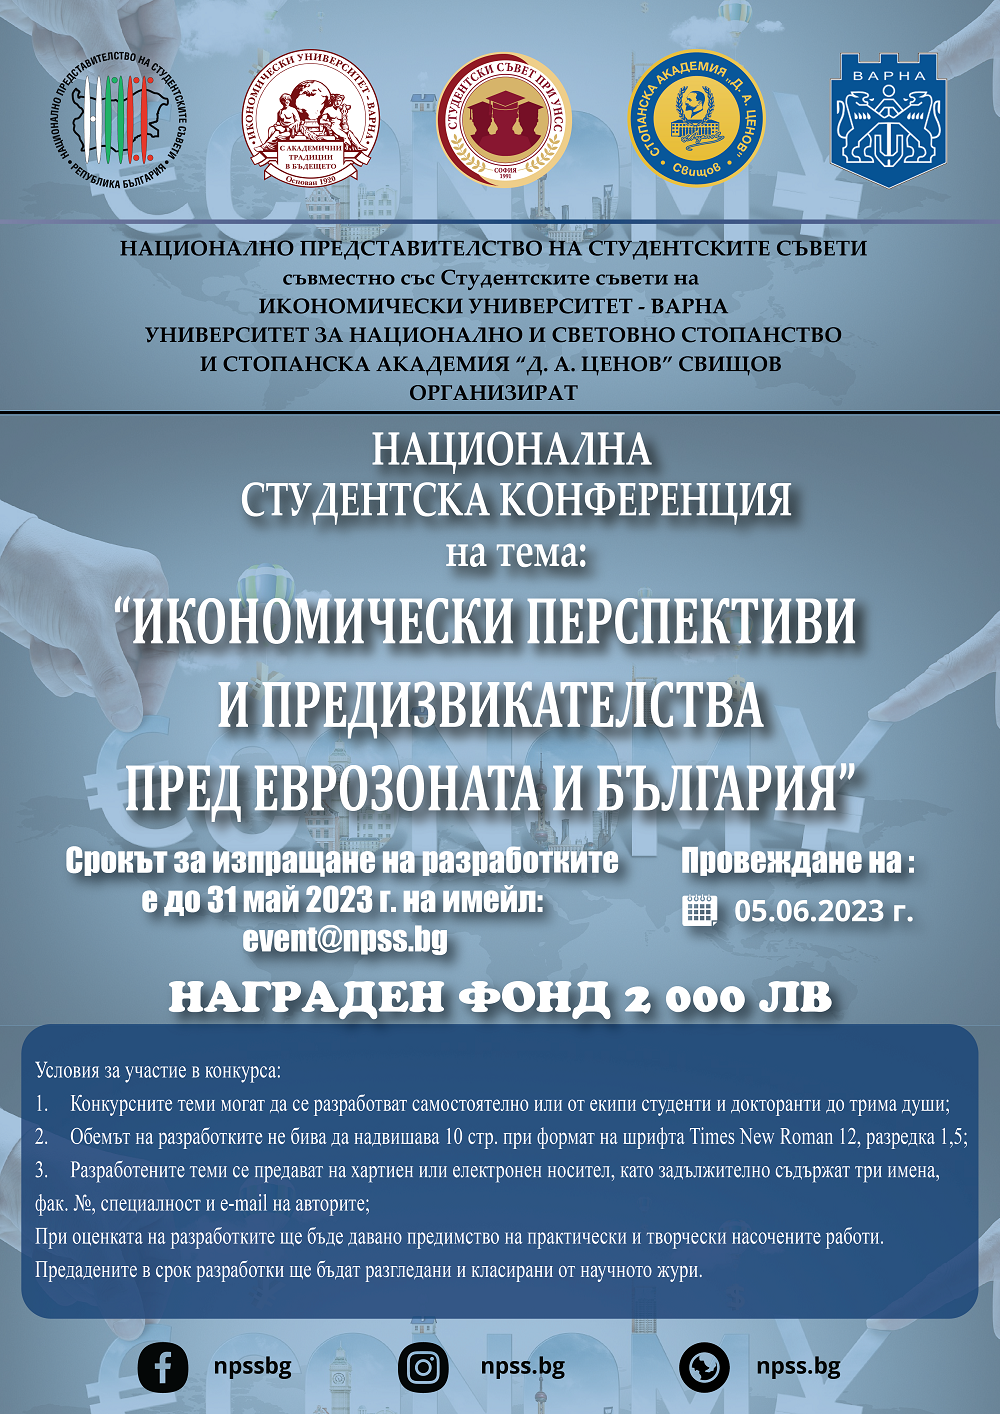 Национална студентска конференция на тема "Икономическите перспективи и предизвикателства пред еврозоната и България"